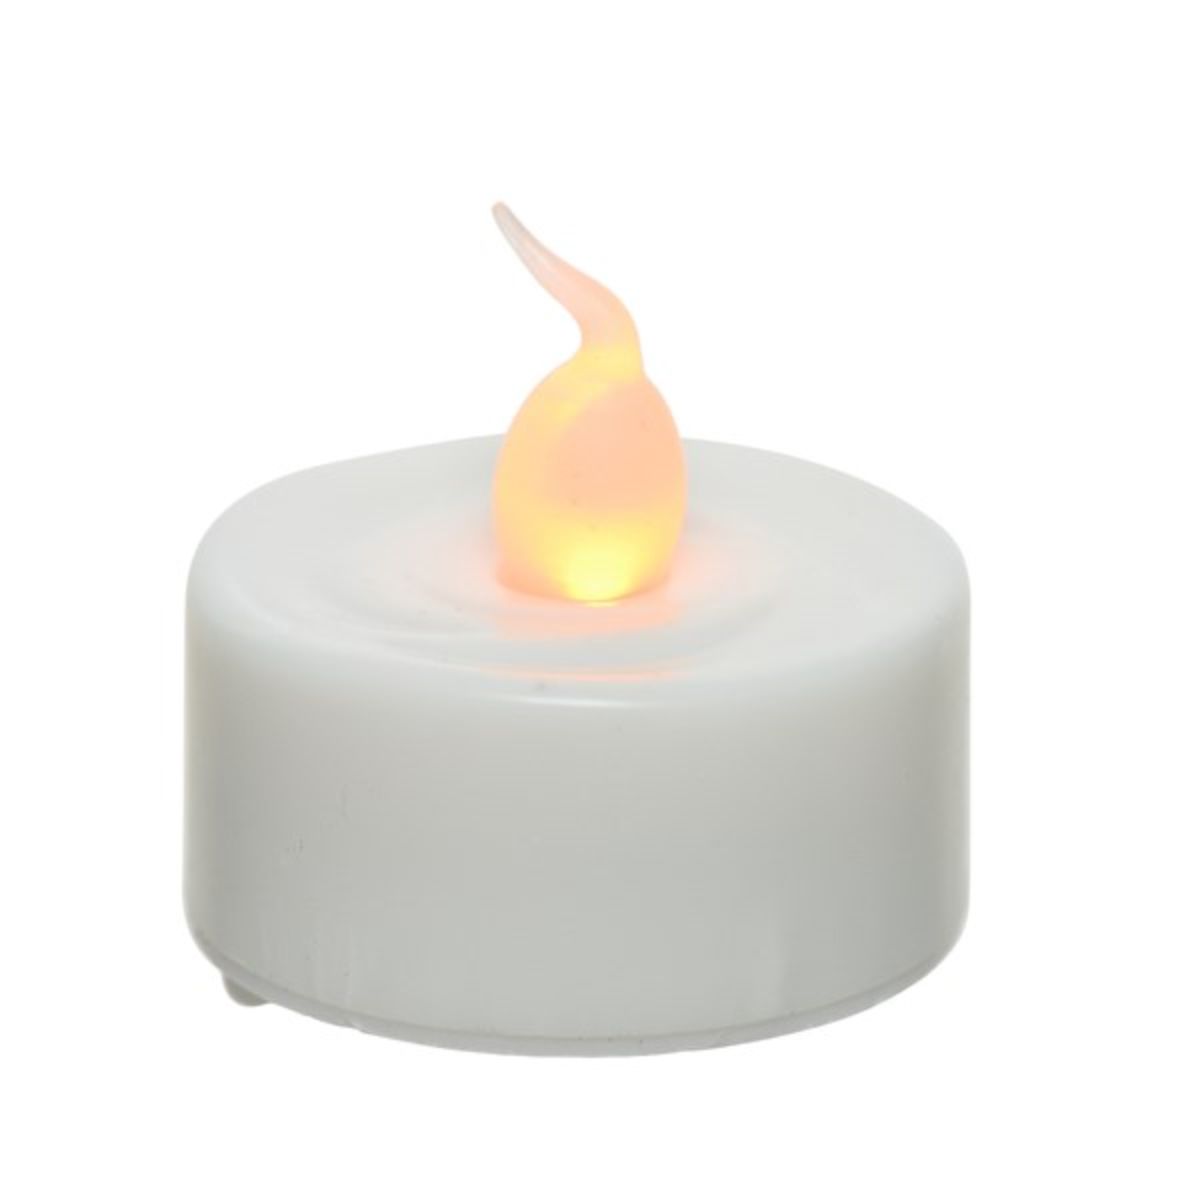 Свеча воздух. Свеча светодиодная Kaemingk свеча светодиодная чайная задуваемая. Свеча диаметр 4 см. Лампочка свечка с 4 спиралью. Свеча светодиодная Kaemingk звездочки Марджи 27 см.